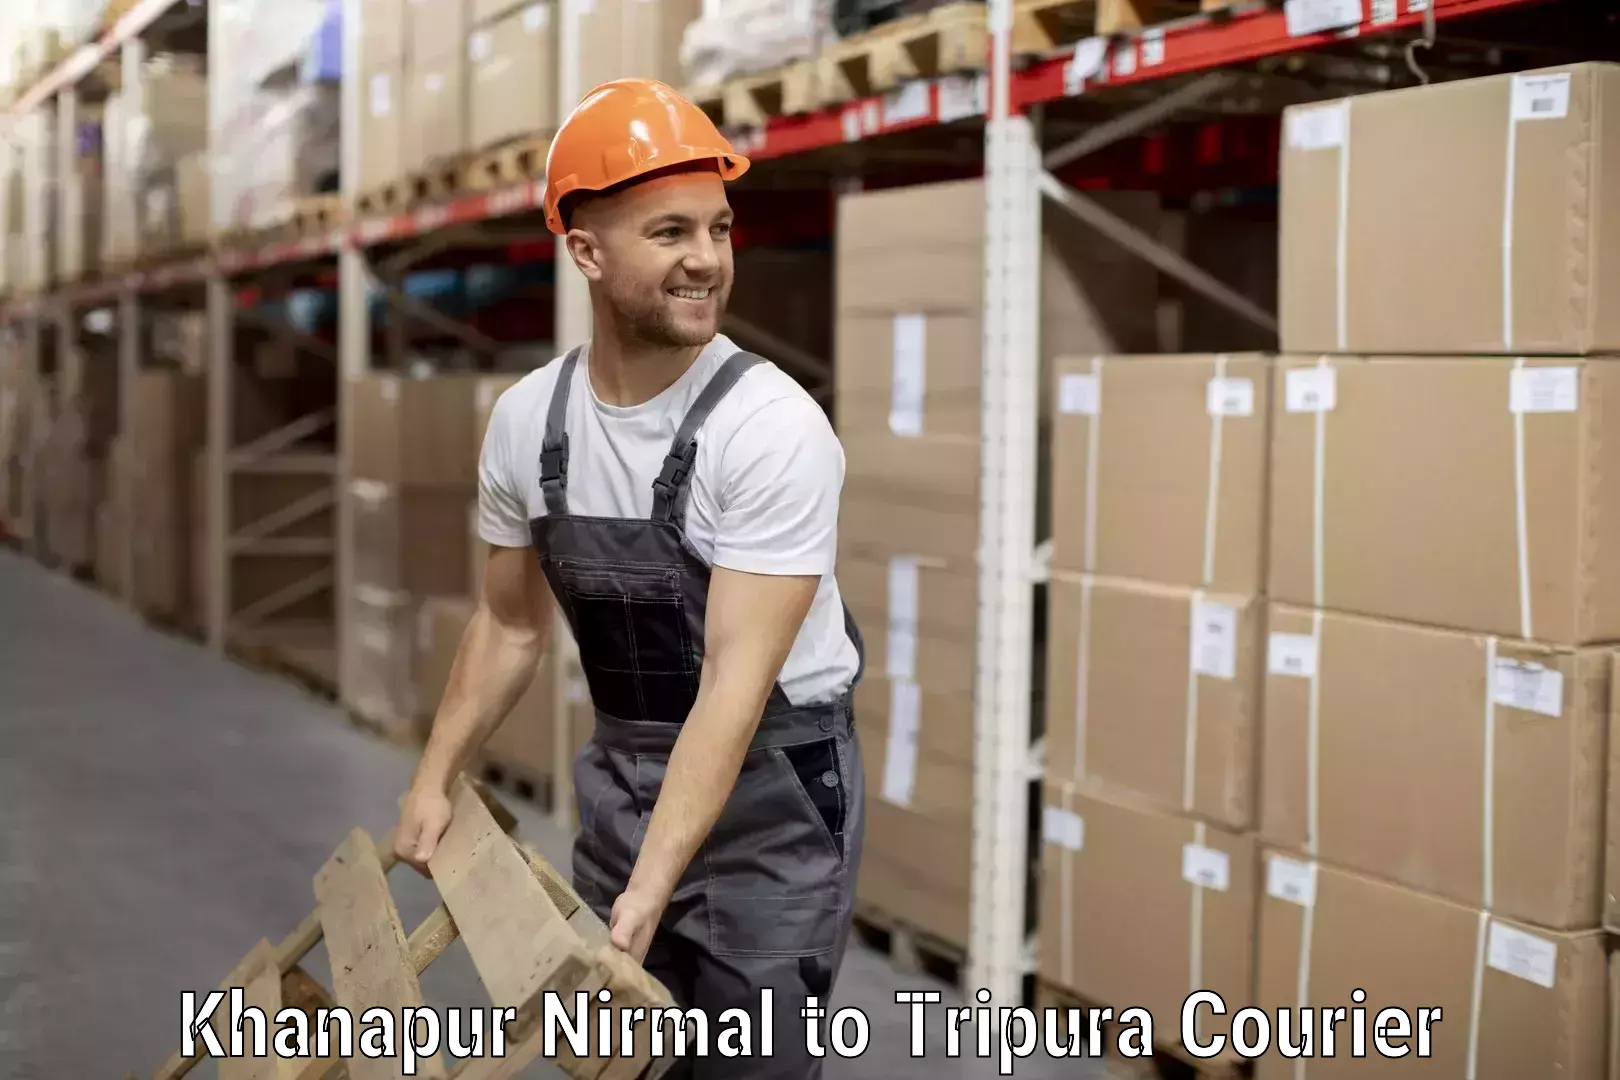 Luggage delivery logistics Khanapur Nirmal to Tripura